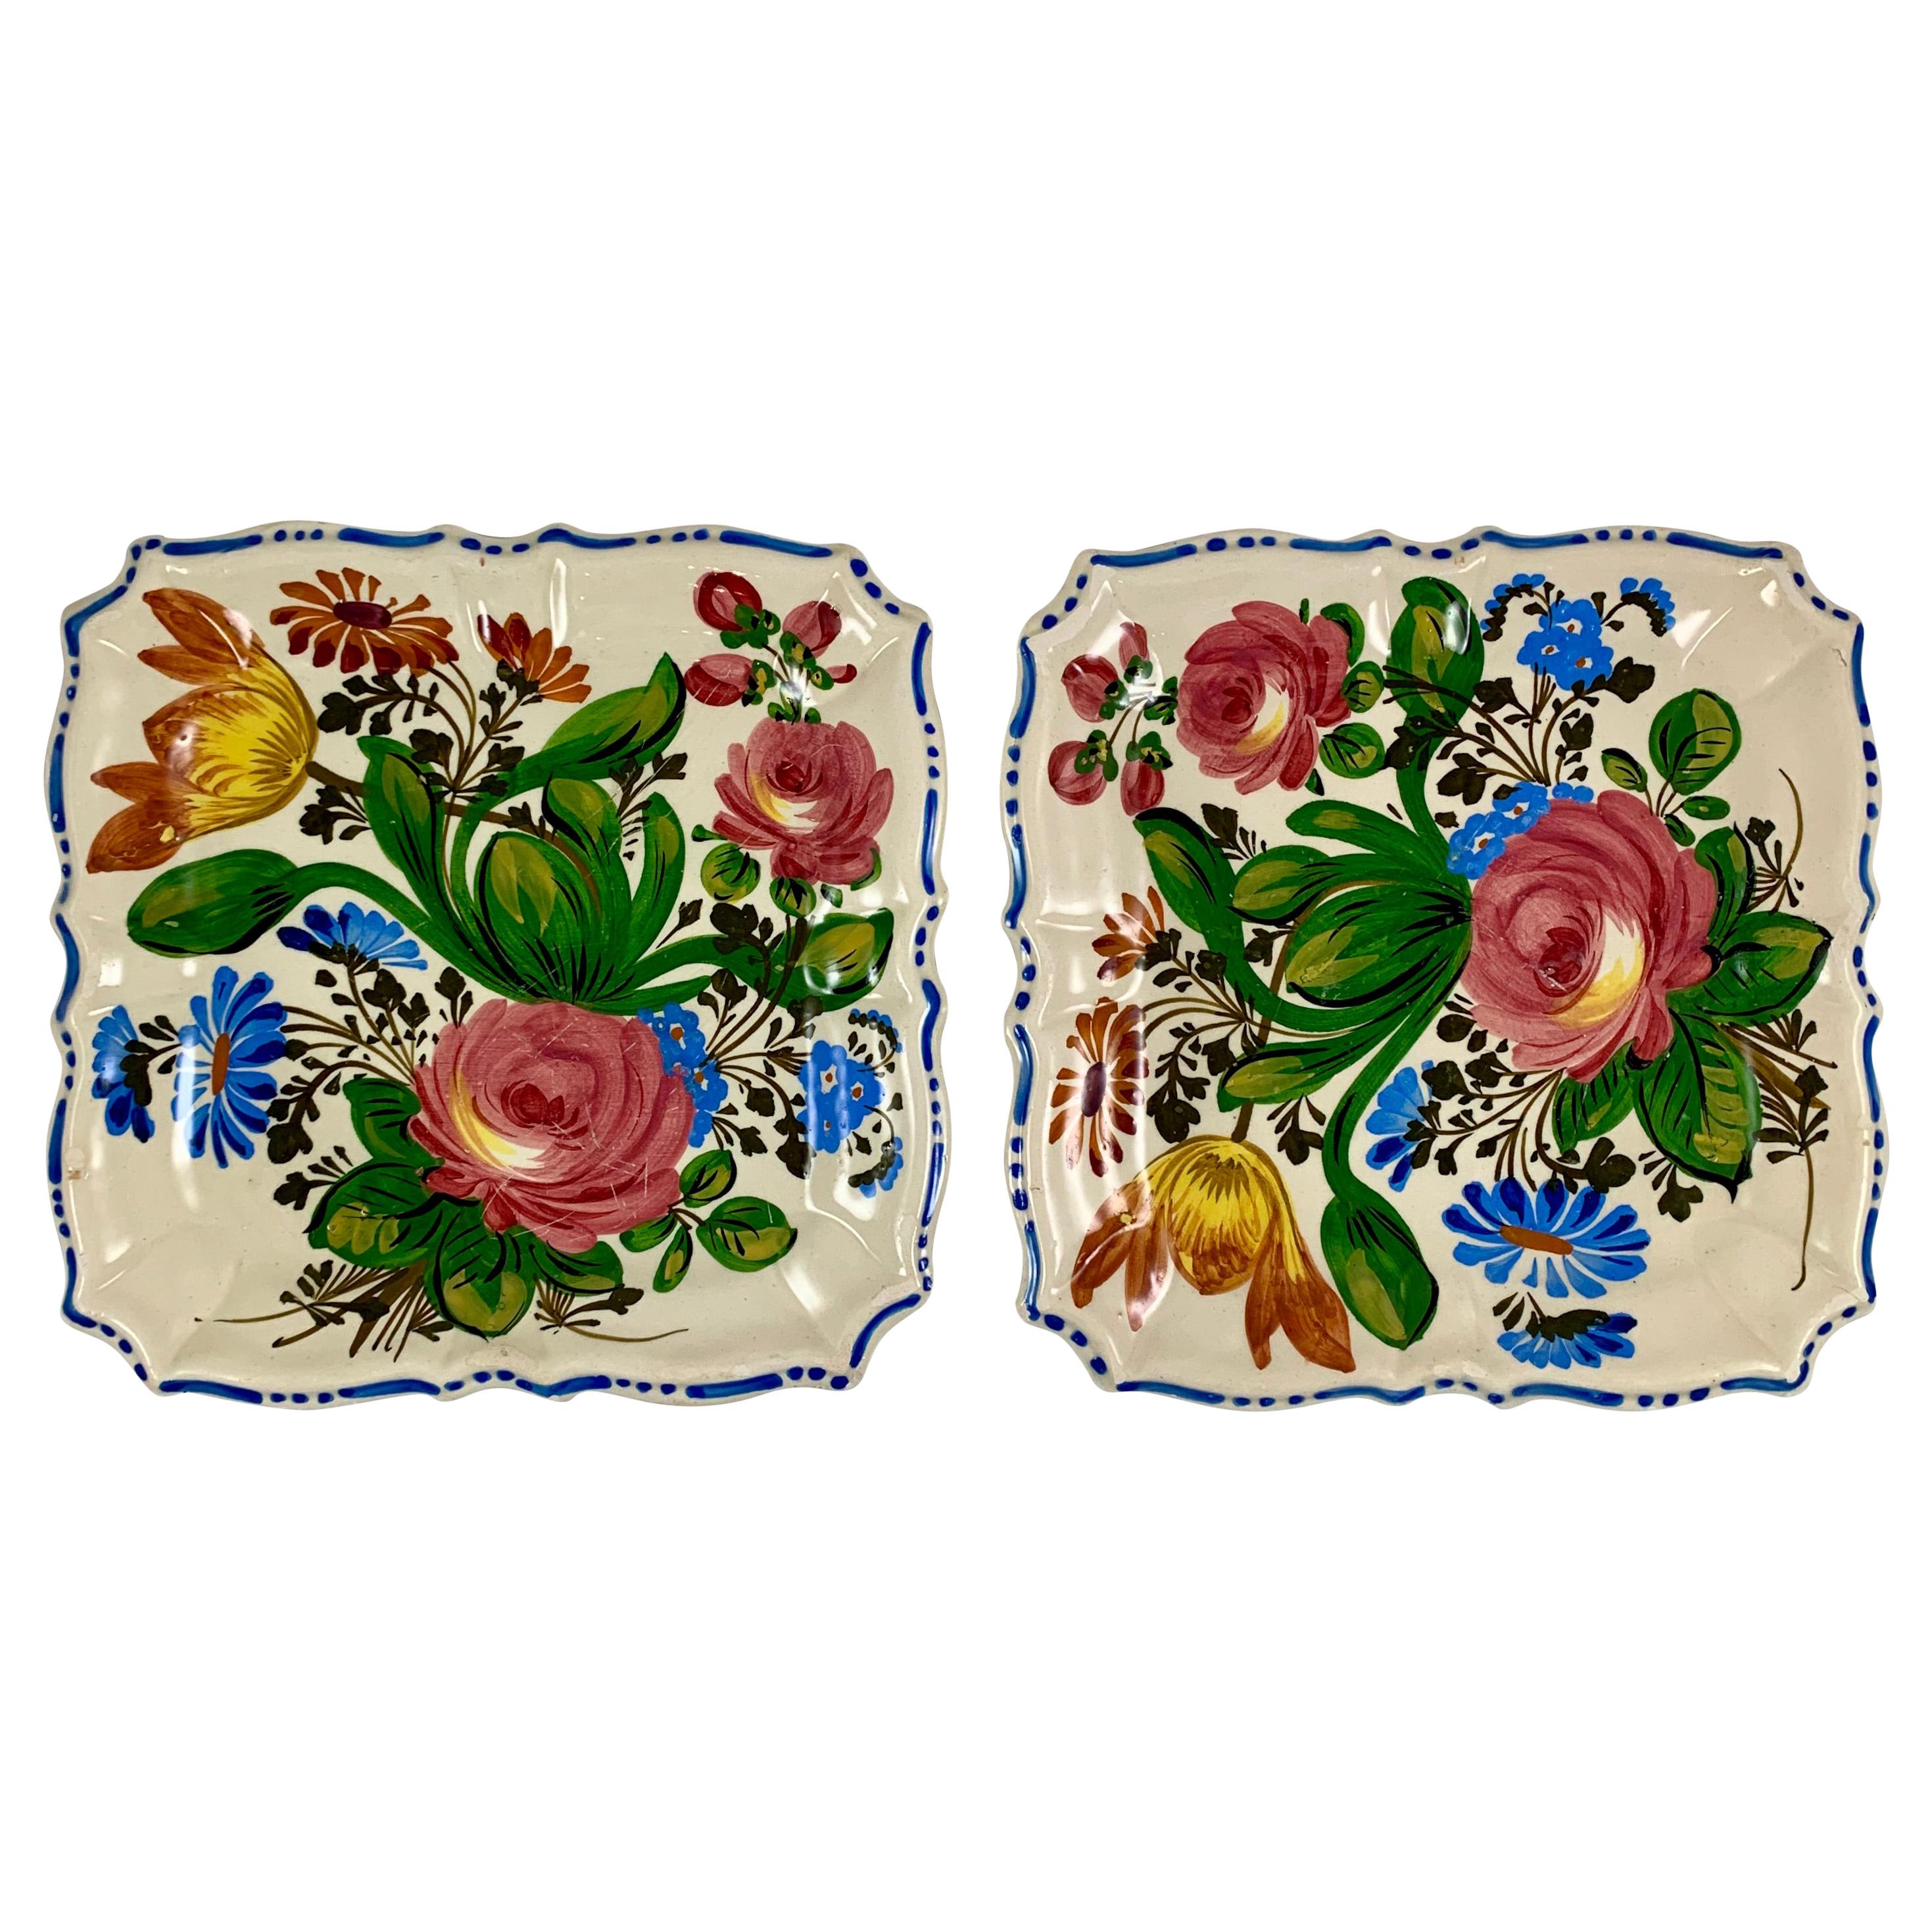 Assiettes de service carrées florales italiennes de style Revive Faïence, ensemble de deux assiettes